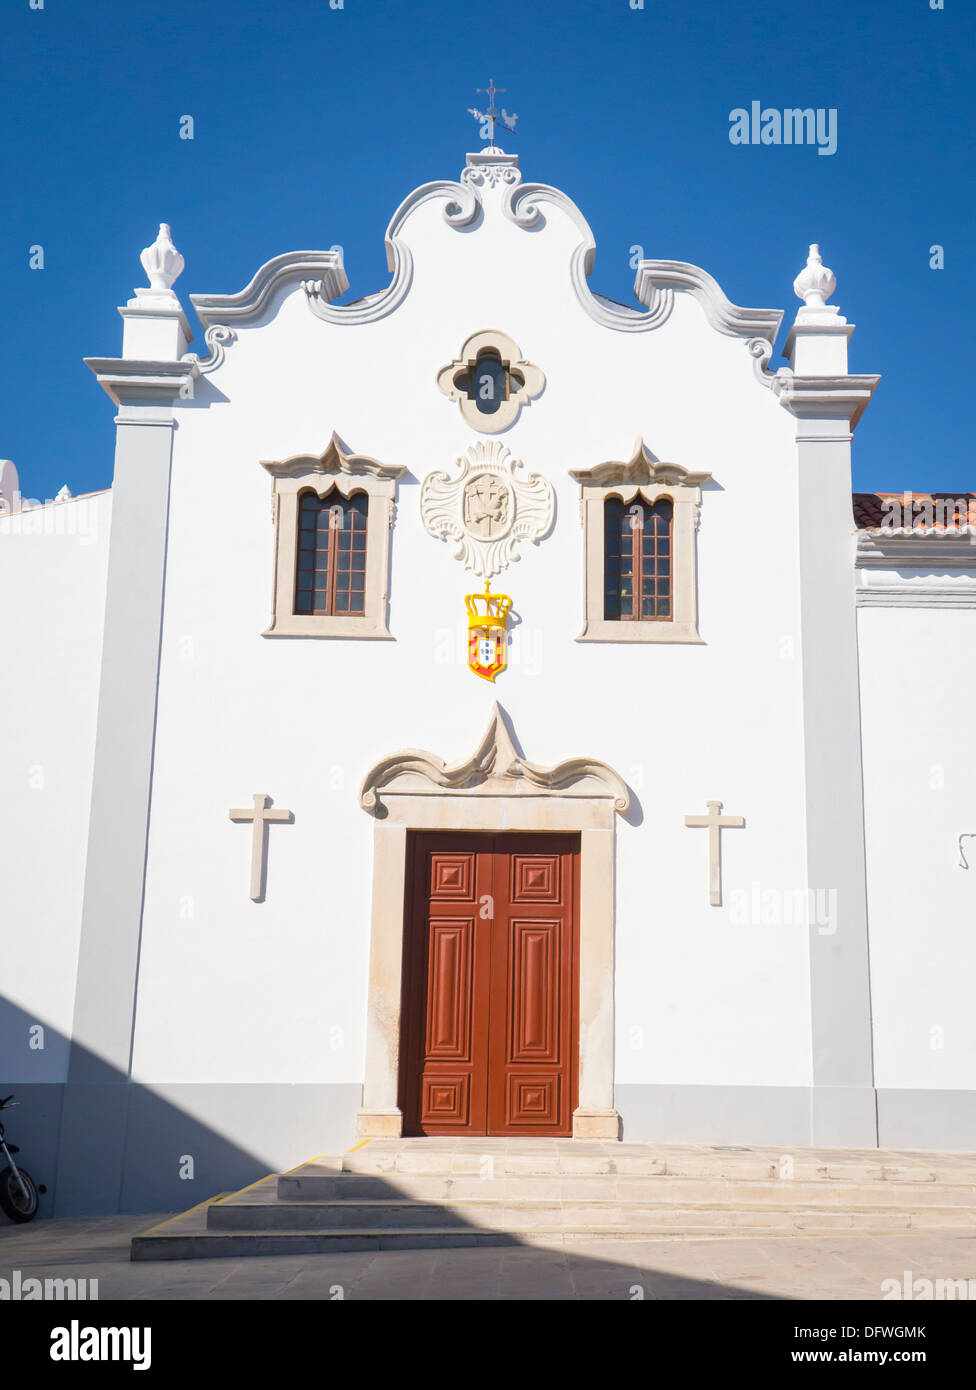 Portugal Algarve Loule 17. Jahrhundert Igreja N.S. da Conceição Kirche unserer Lieben Frau von der Empfängnis weiße Farbe Kreuz Kreuze hölzerne Tür Stufen Fenster Stockfoto